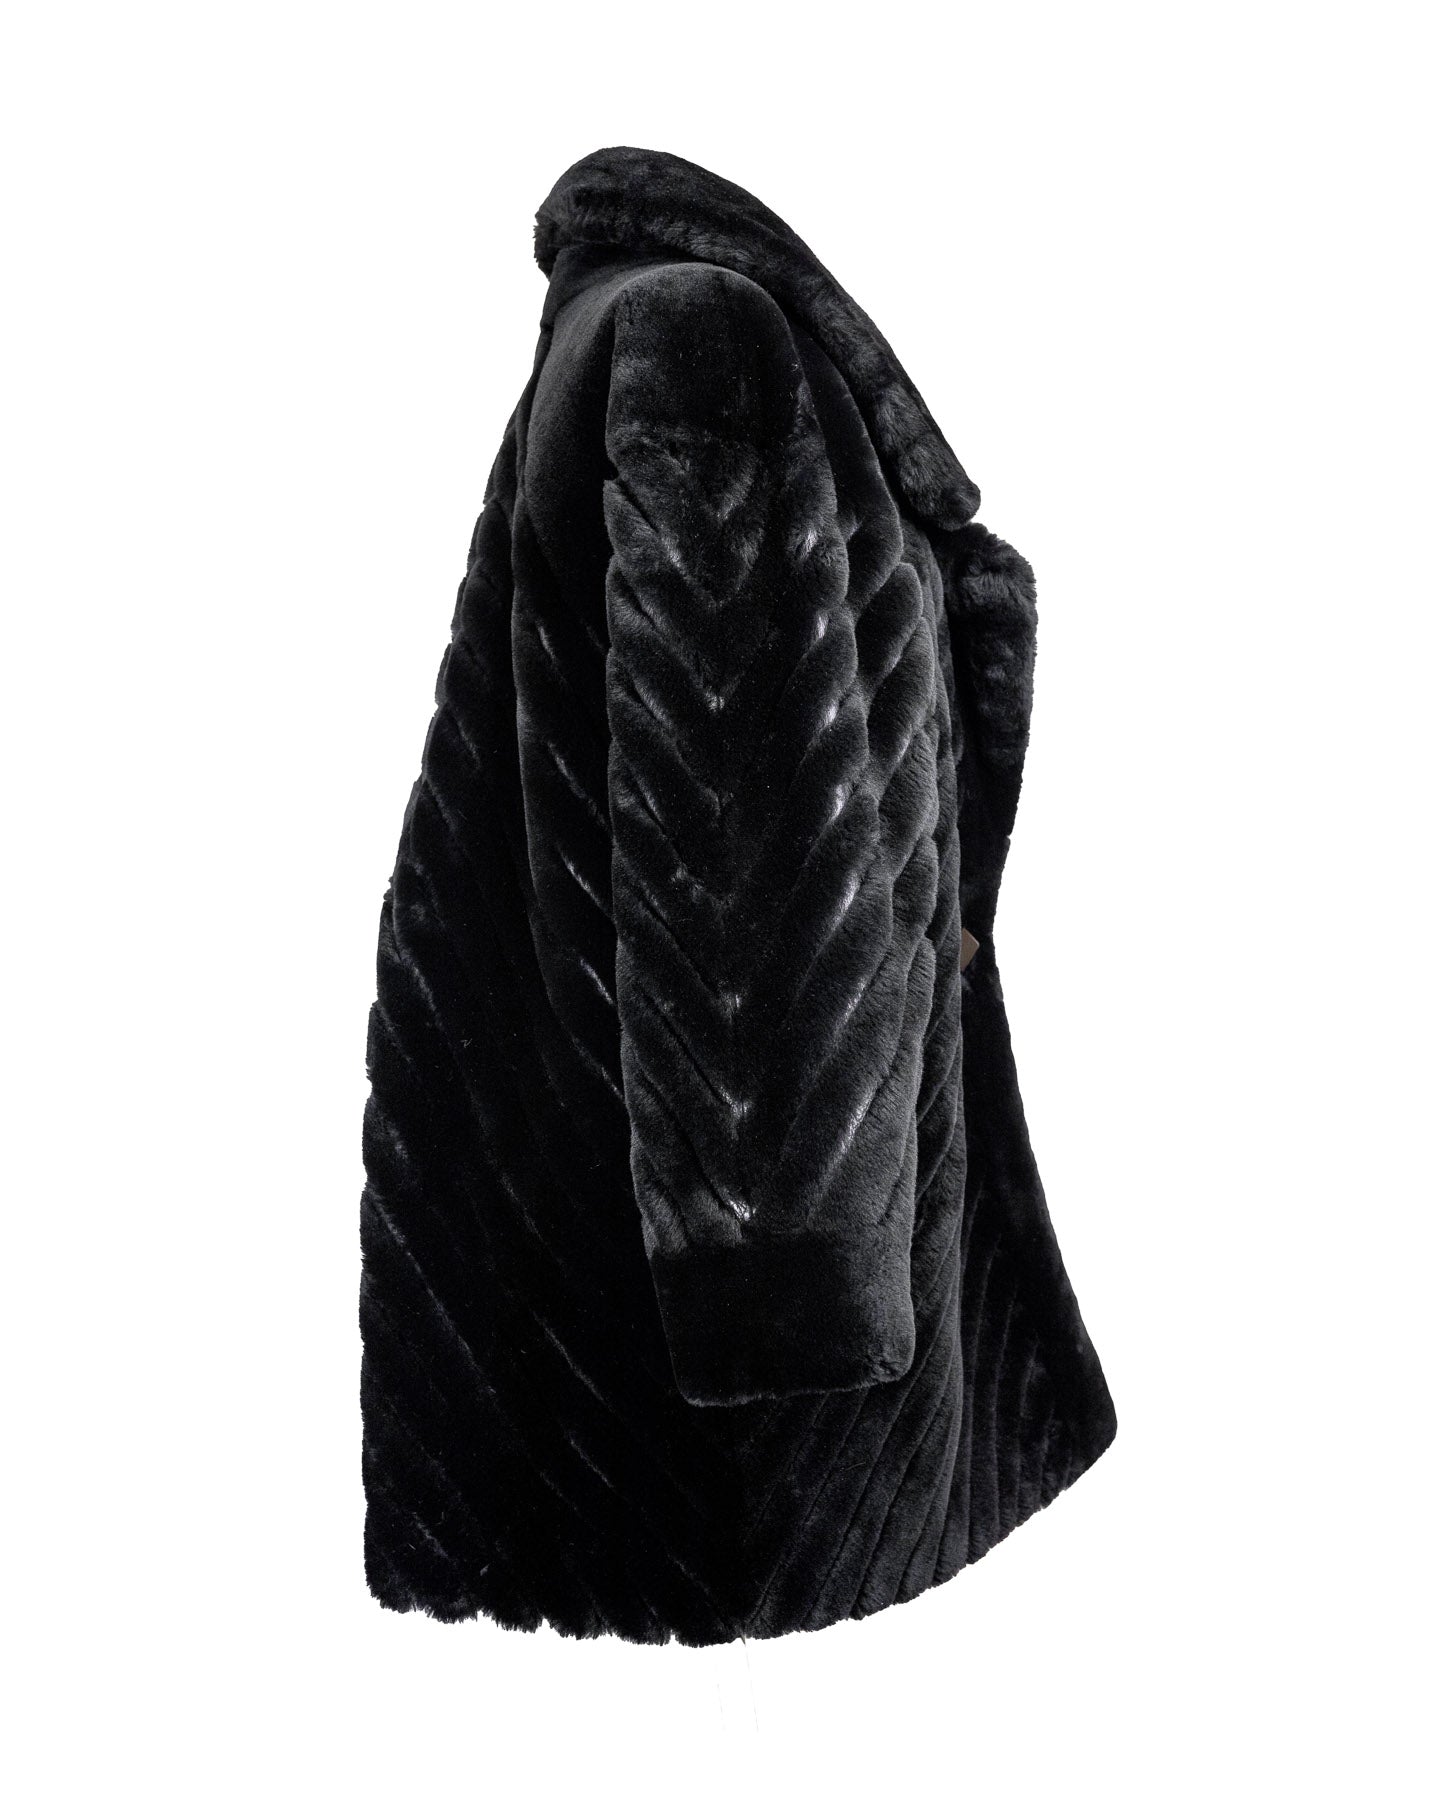 Christian Dior Manteau en fourrure et cuir vintage en noir 